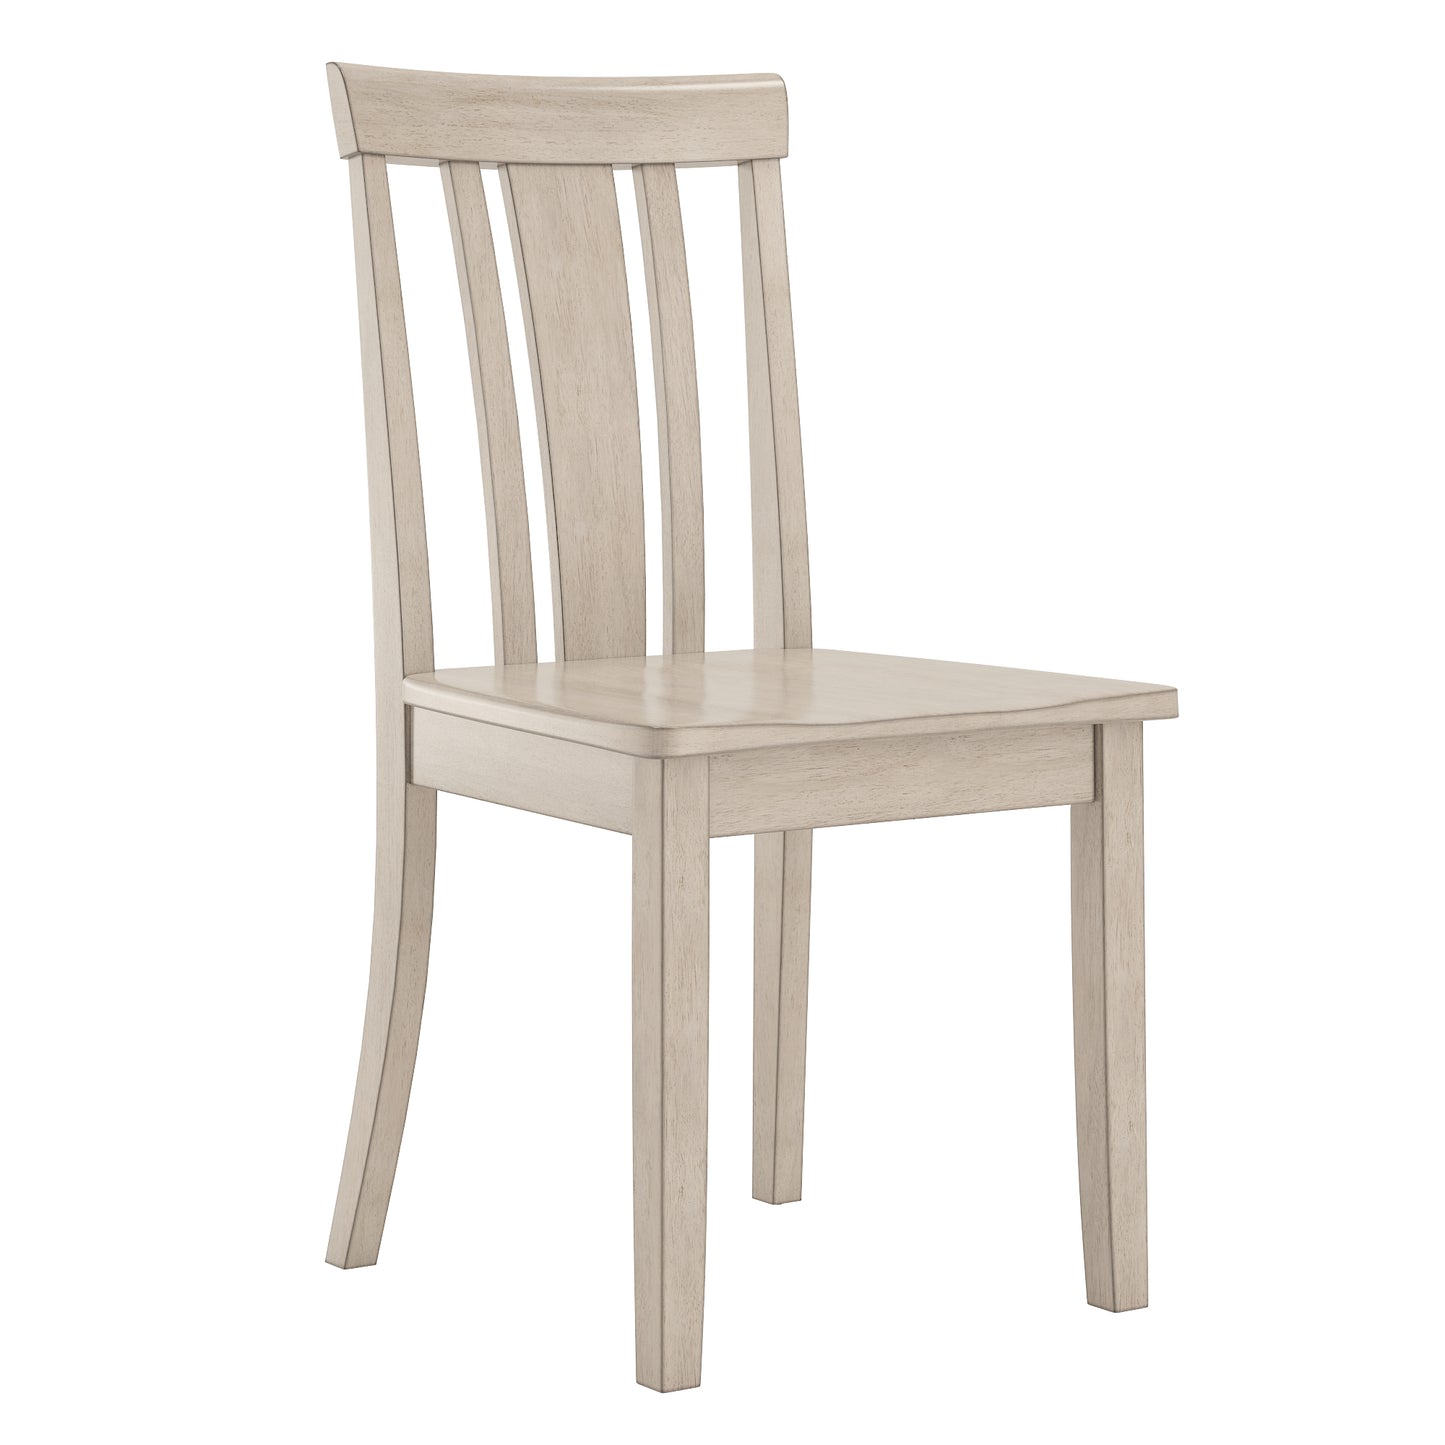 Slat Back Wood Dining Chairs (Set of 2) - Antique White Finish